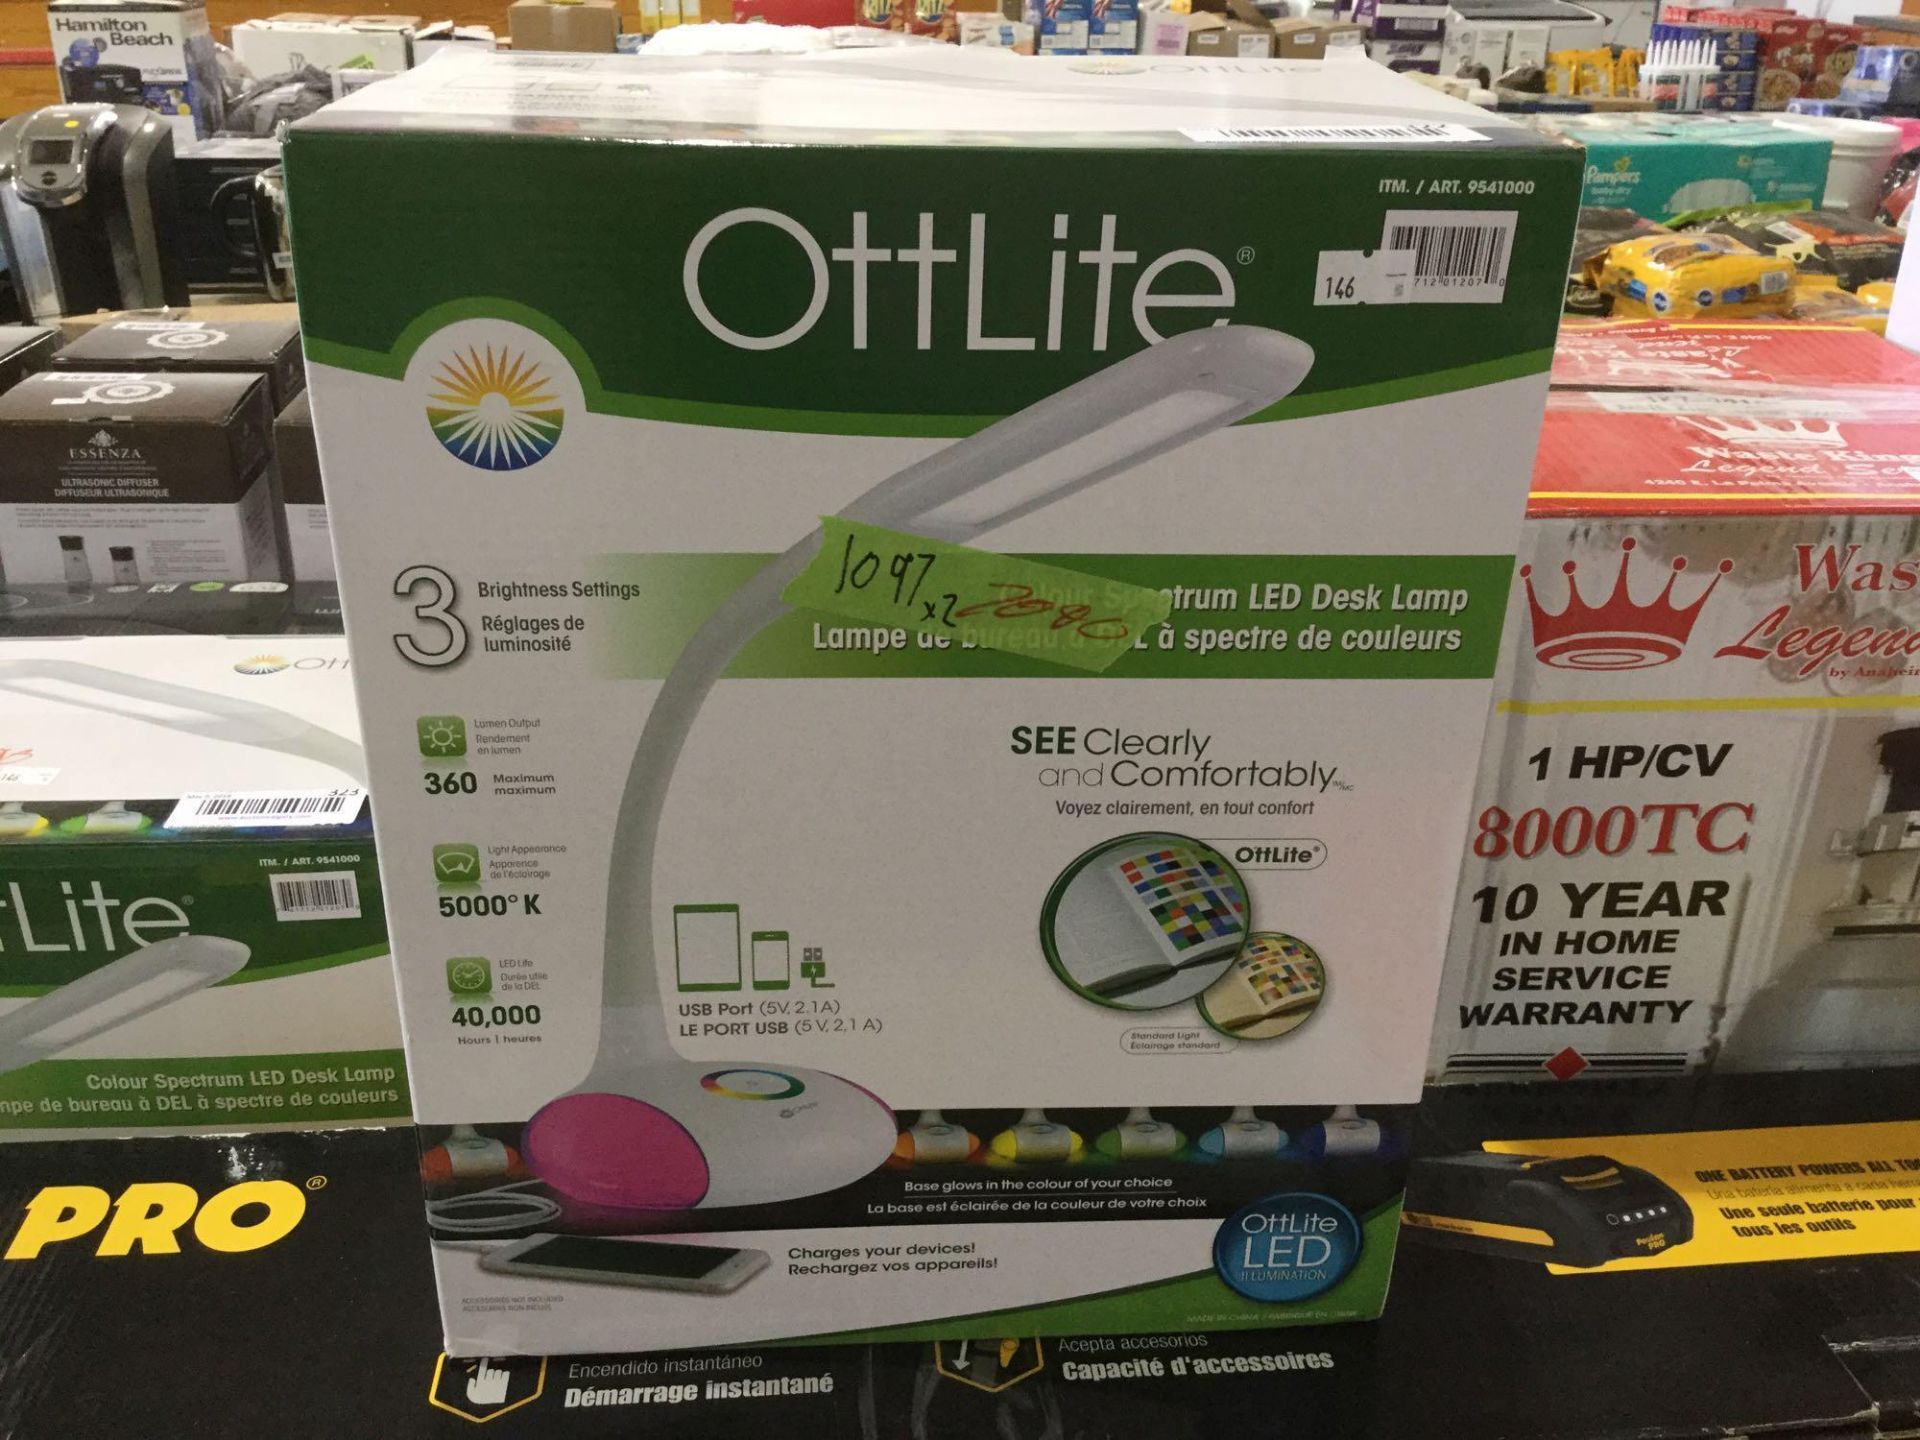 OttLite LED Desk Lamp